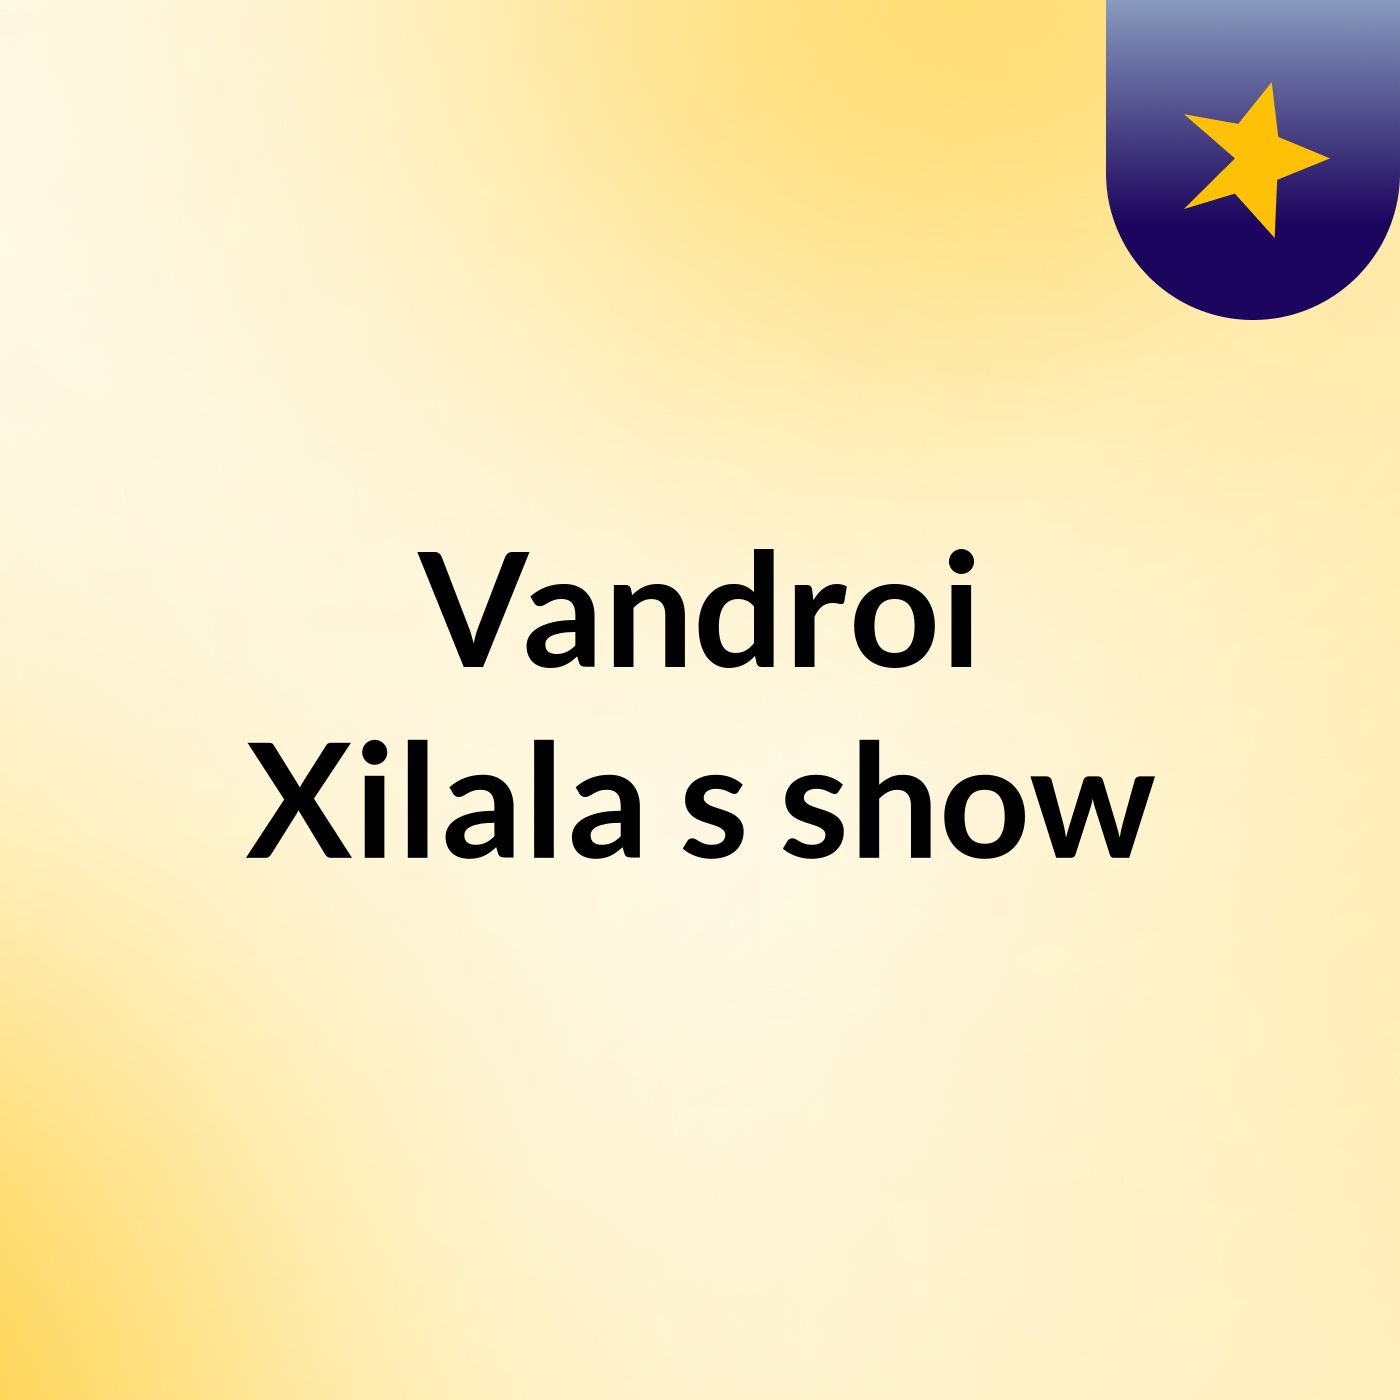 Vandroi Xilala's show